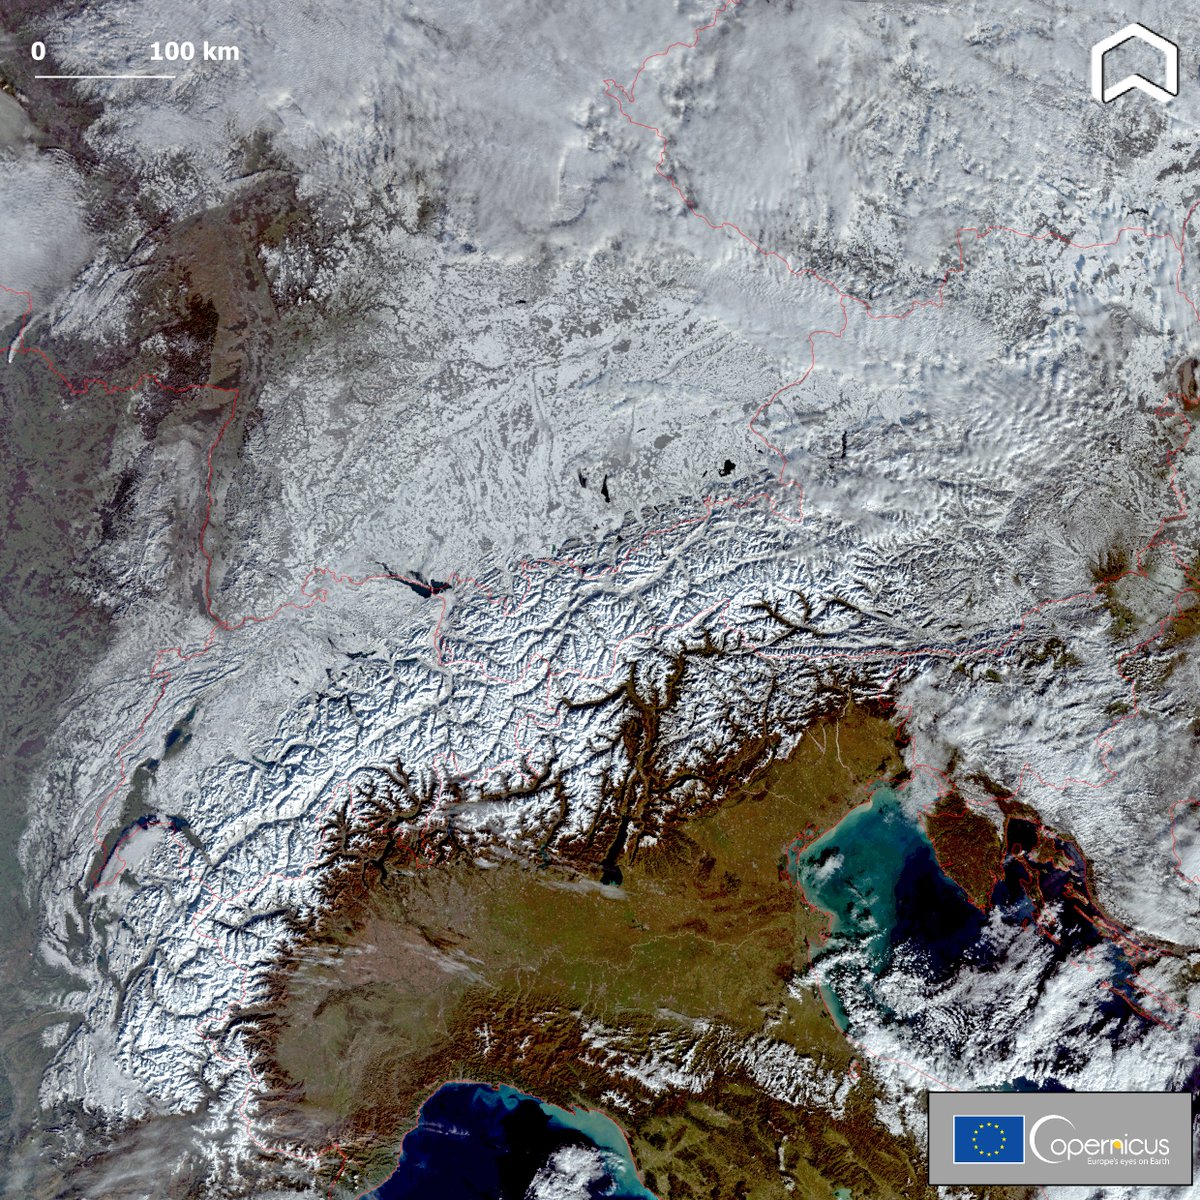 Η Ευρώπη σκεπασμένη στο χιόνι! Μια καταπληκτική  δορυφορική εικόνα από τον #Sentinel3 που τραβήχτηκε στις 3 Δεκεμβρίου. Η πρώτη ισχυρή  χιονόπτωση σε #Italy , #Germany , #Austria